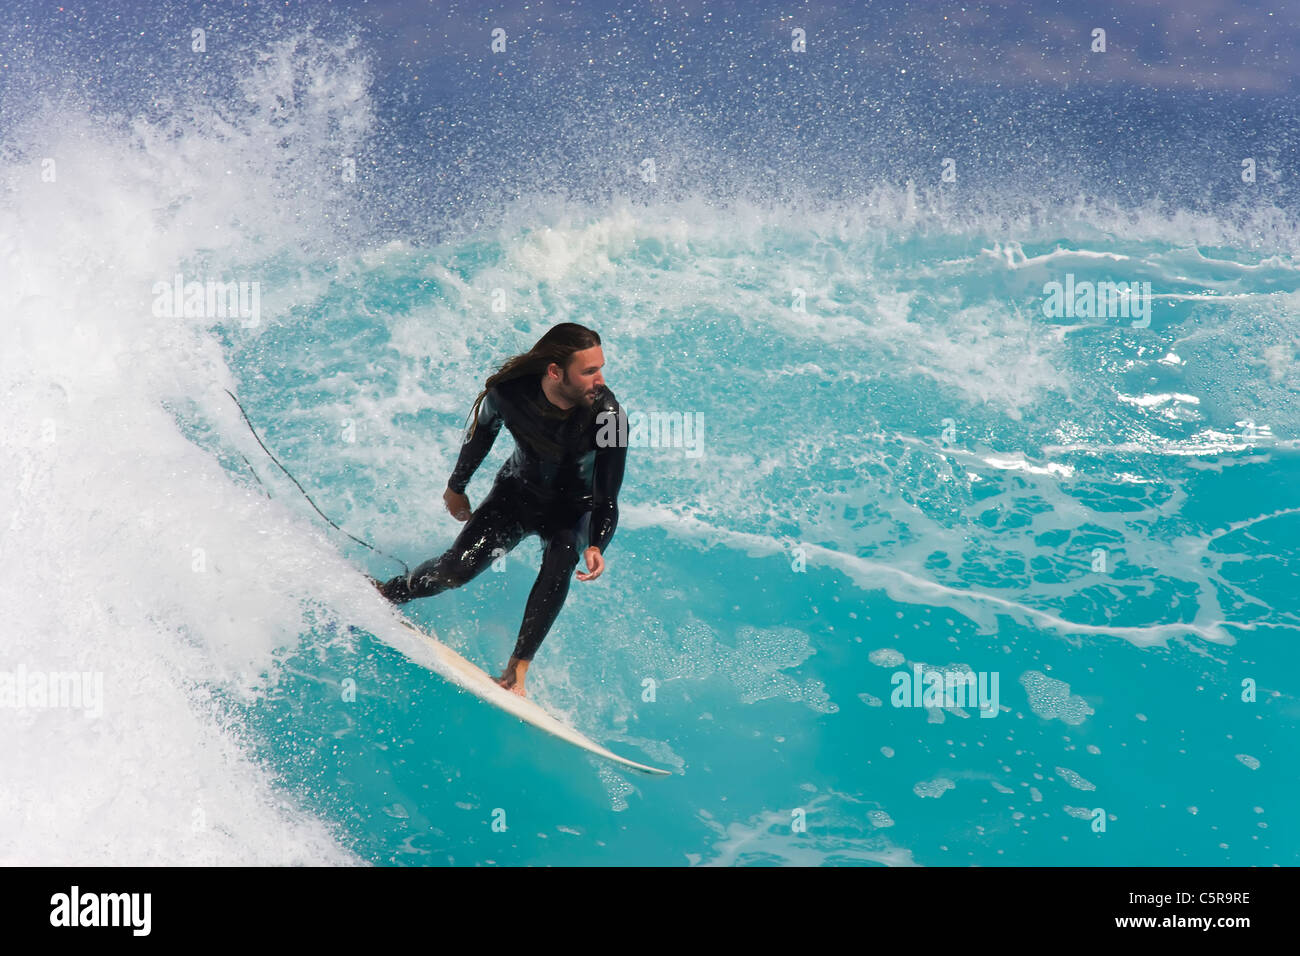 Un surfista cabalga una impresionante ola del océano azul celeste. Foto de stock